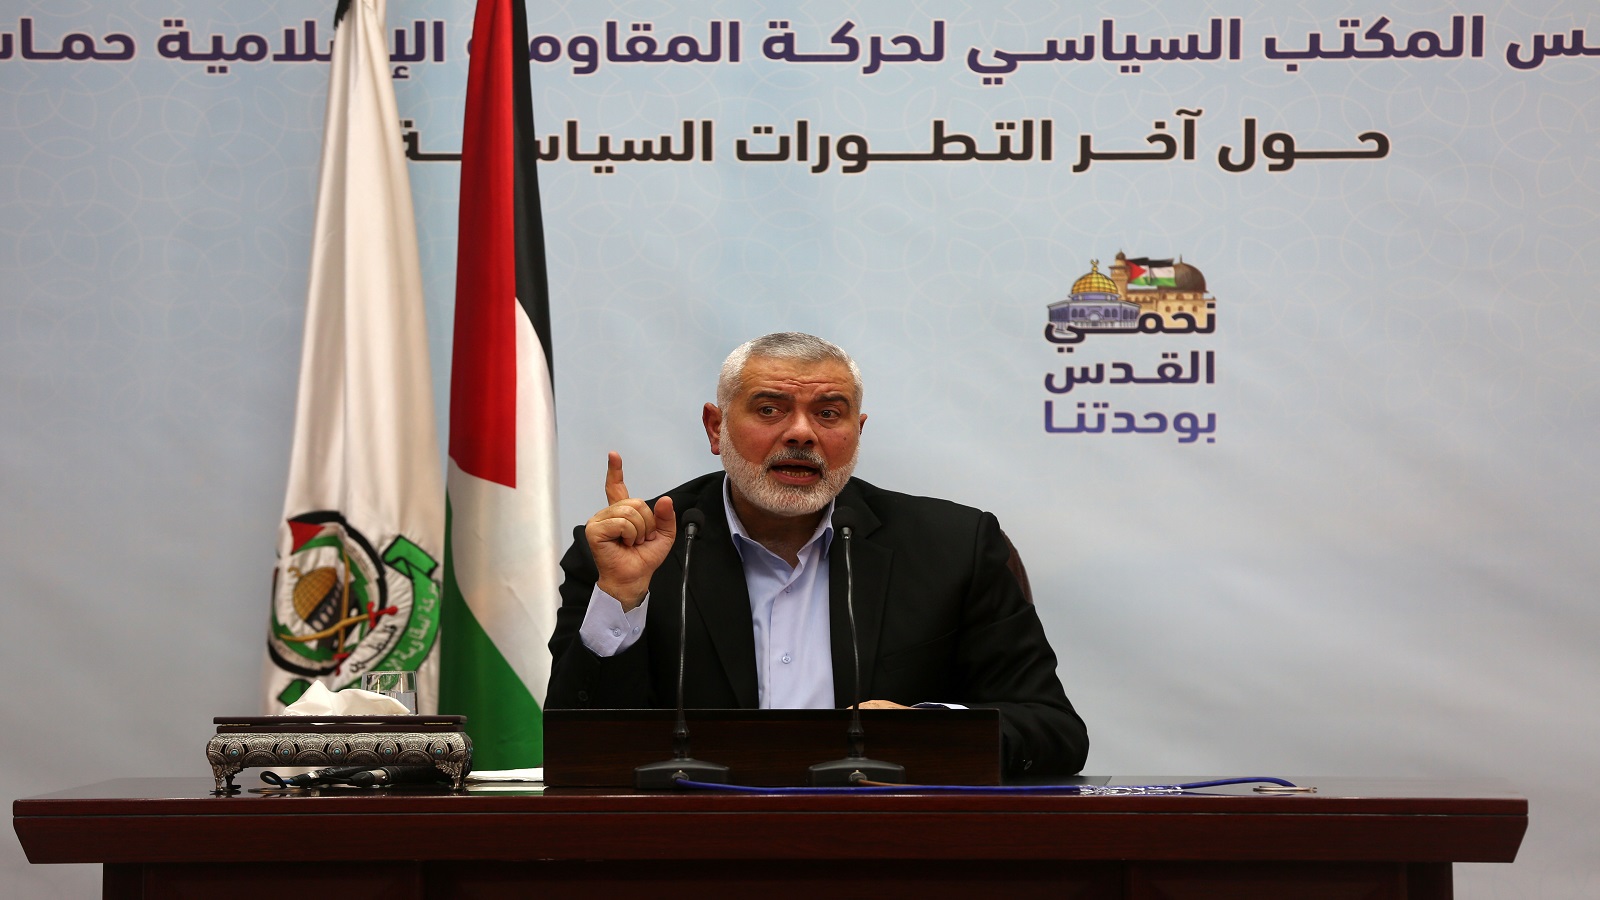 الانتخابات الفلسطينية:حماس تتخلى عن التزامن وتقبل بالتتابع والترابط